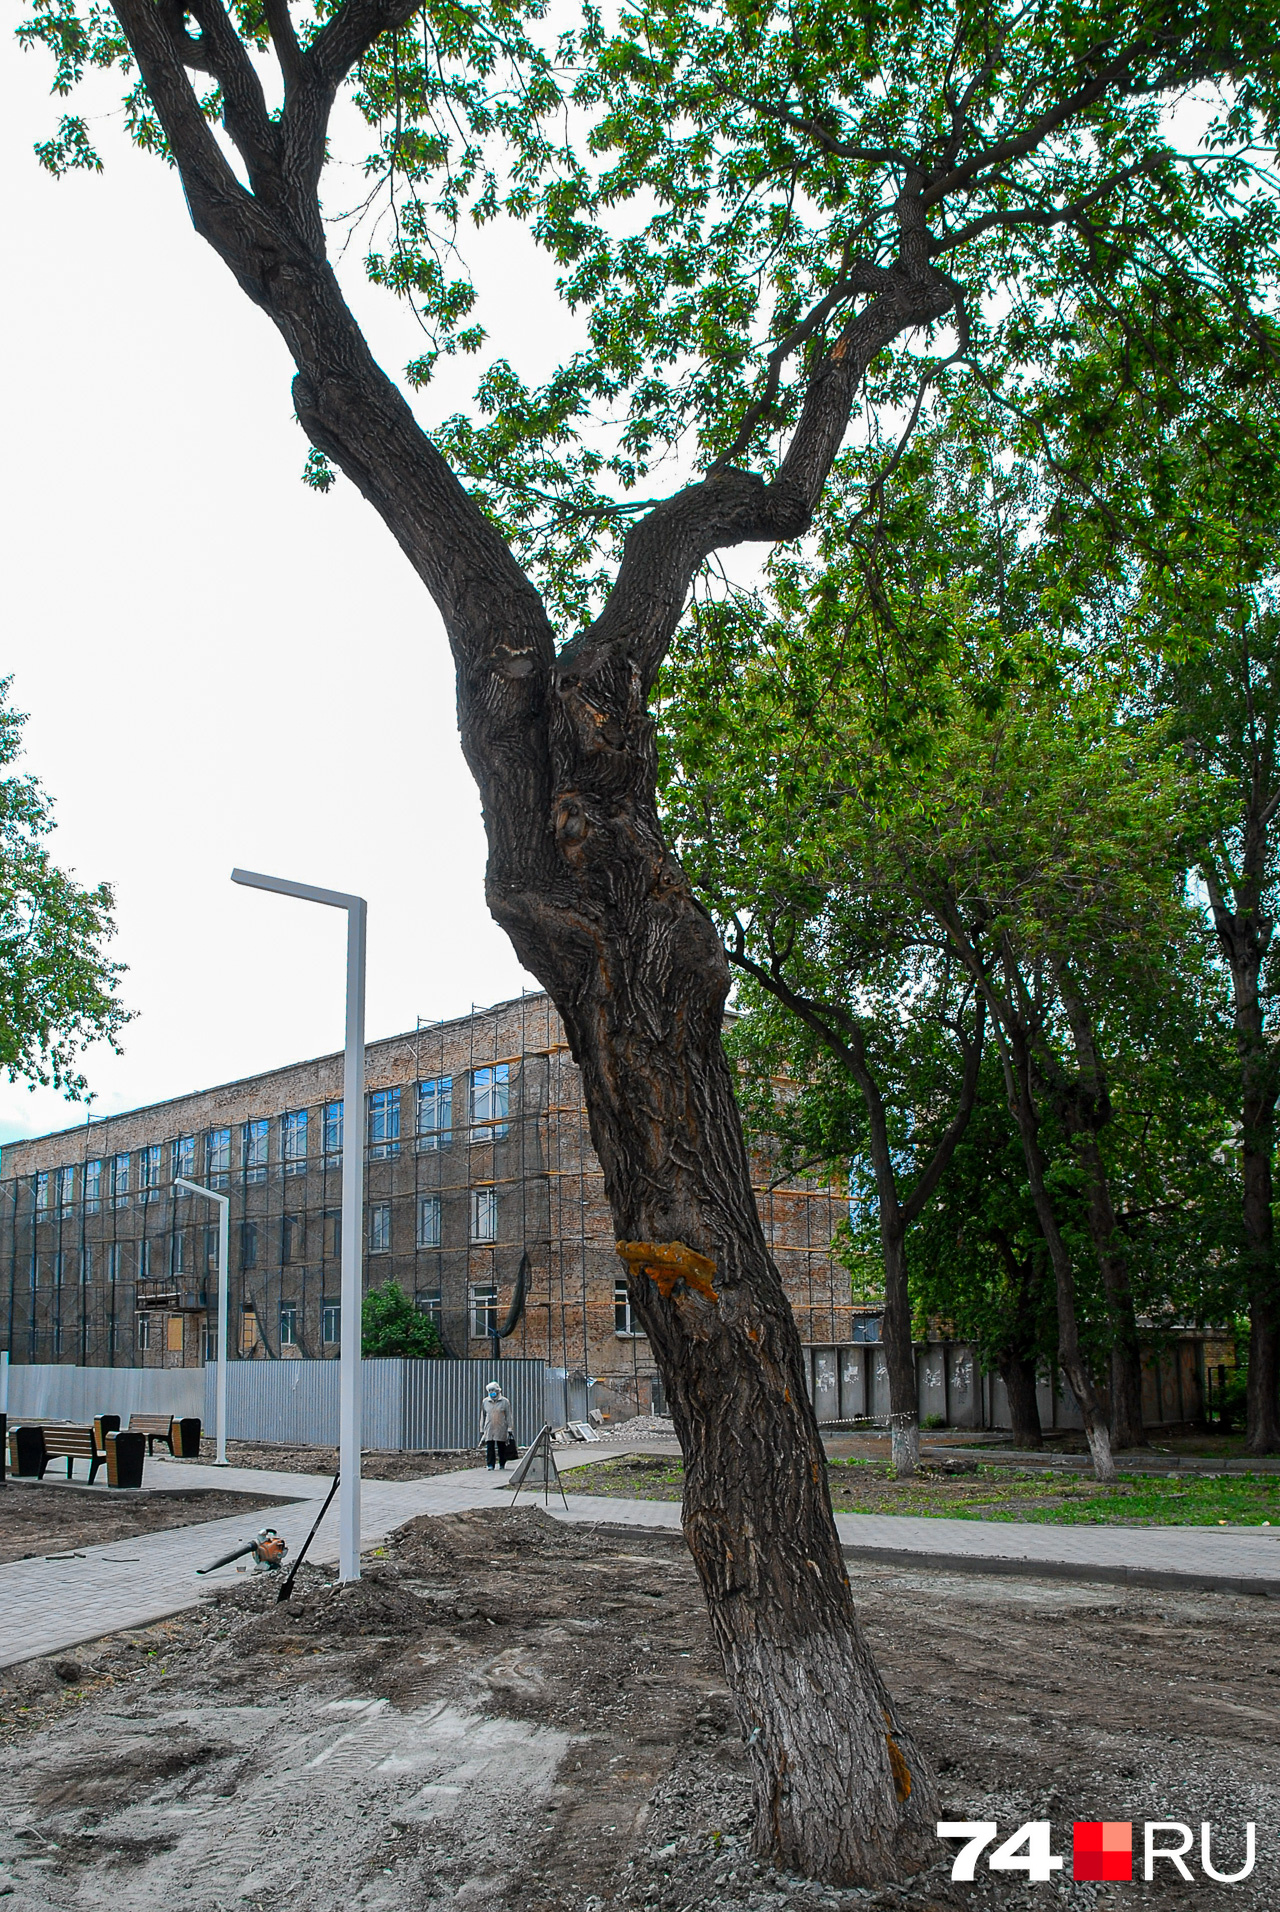 Карагач, или вяз приземистый — популярное в Челябинске дерево. Правда, специалисты по озеленению отзываются о нём не слишком высоко. Карагачи не очень красивы и часто ломаются